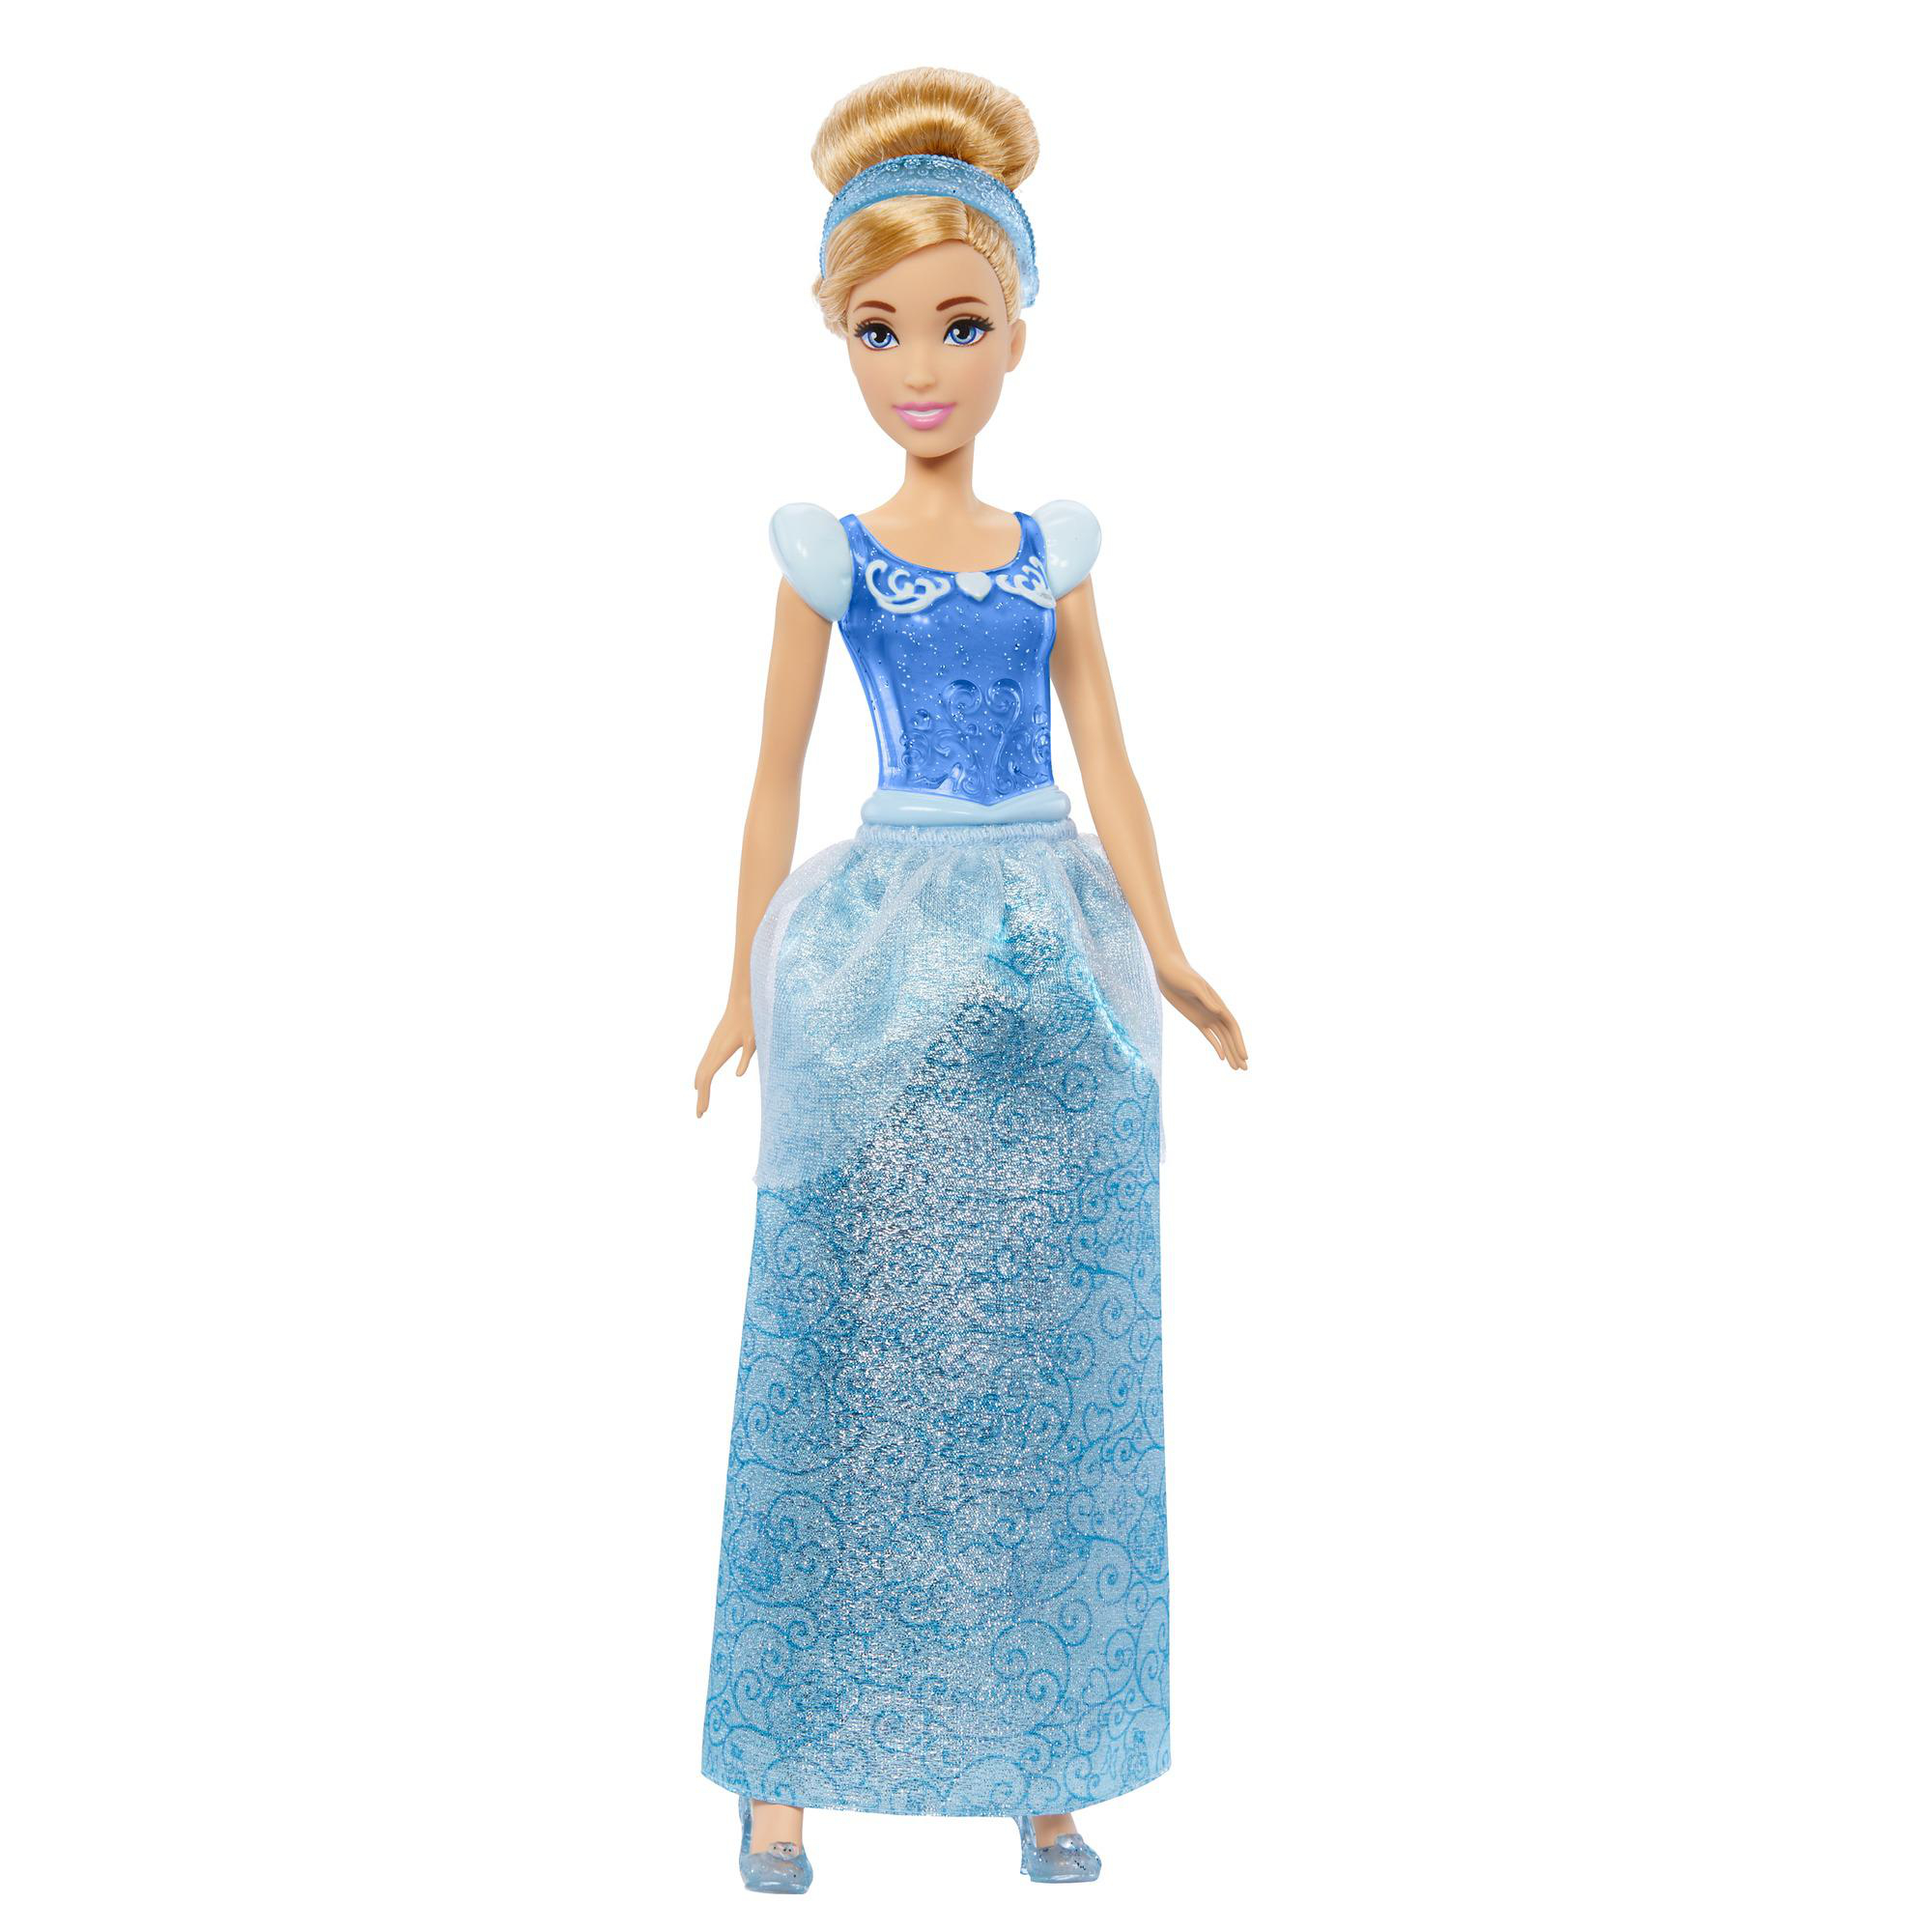 Mehrfarbig Disney Cinderella-Puppe BARBIE Prinzessin HLW06 Spielzeugpuppe